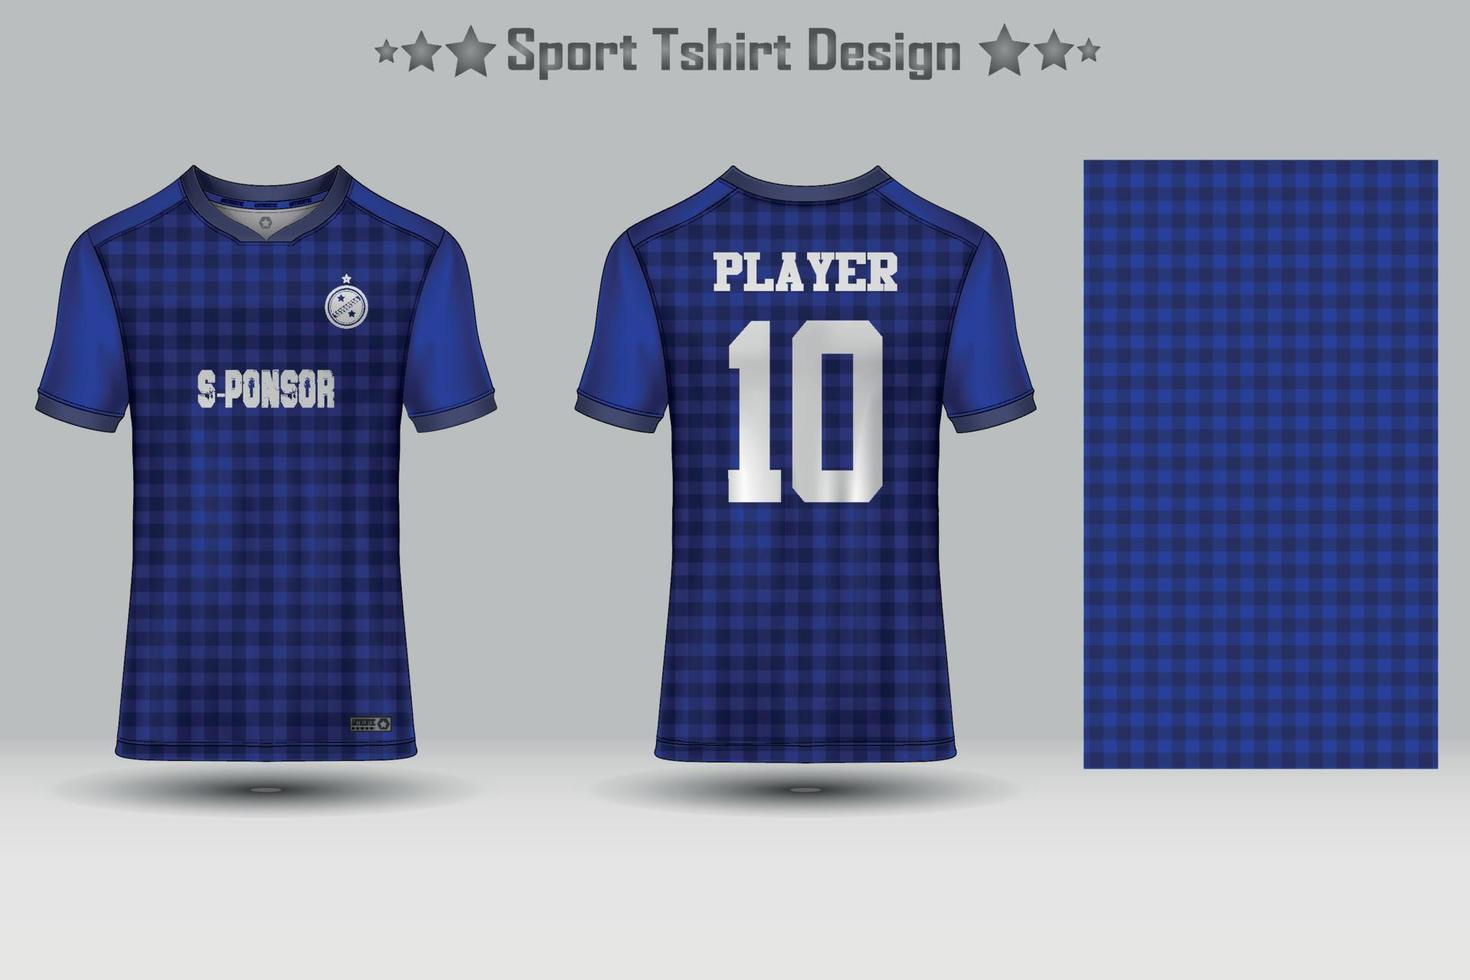 plantilla de maqueta de patrón geométrico de jersey de fútbol abstracto diseño de camiseta deportiva vector